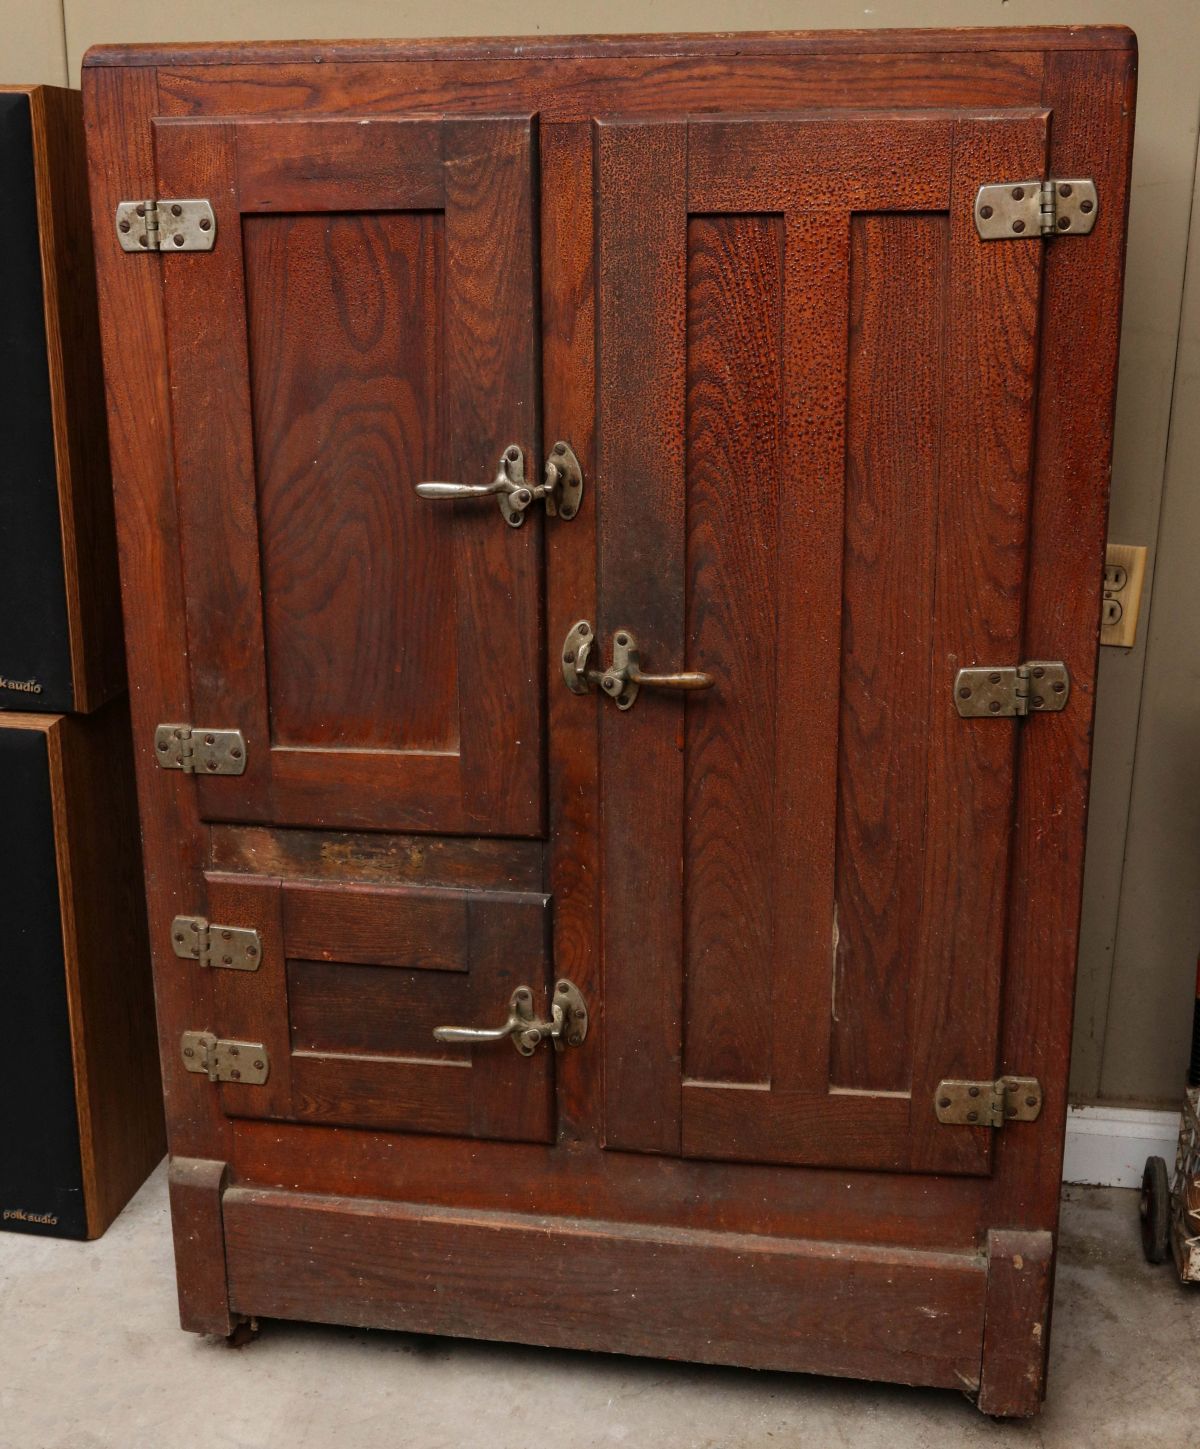 AN ASH WOOD THREE DOOR ICE BOX CIRCA 1900